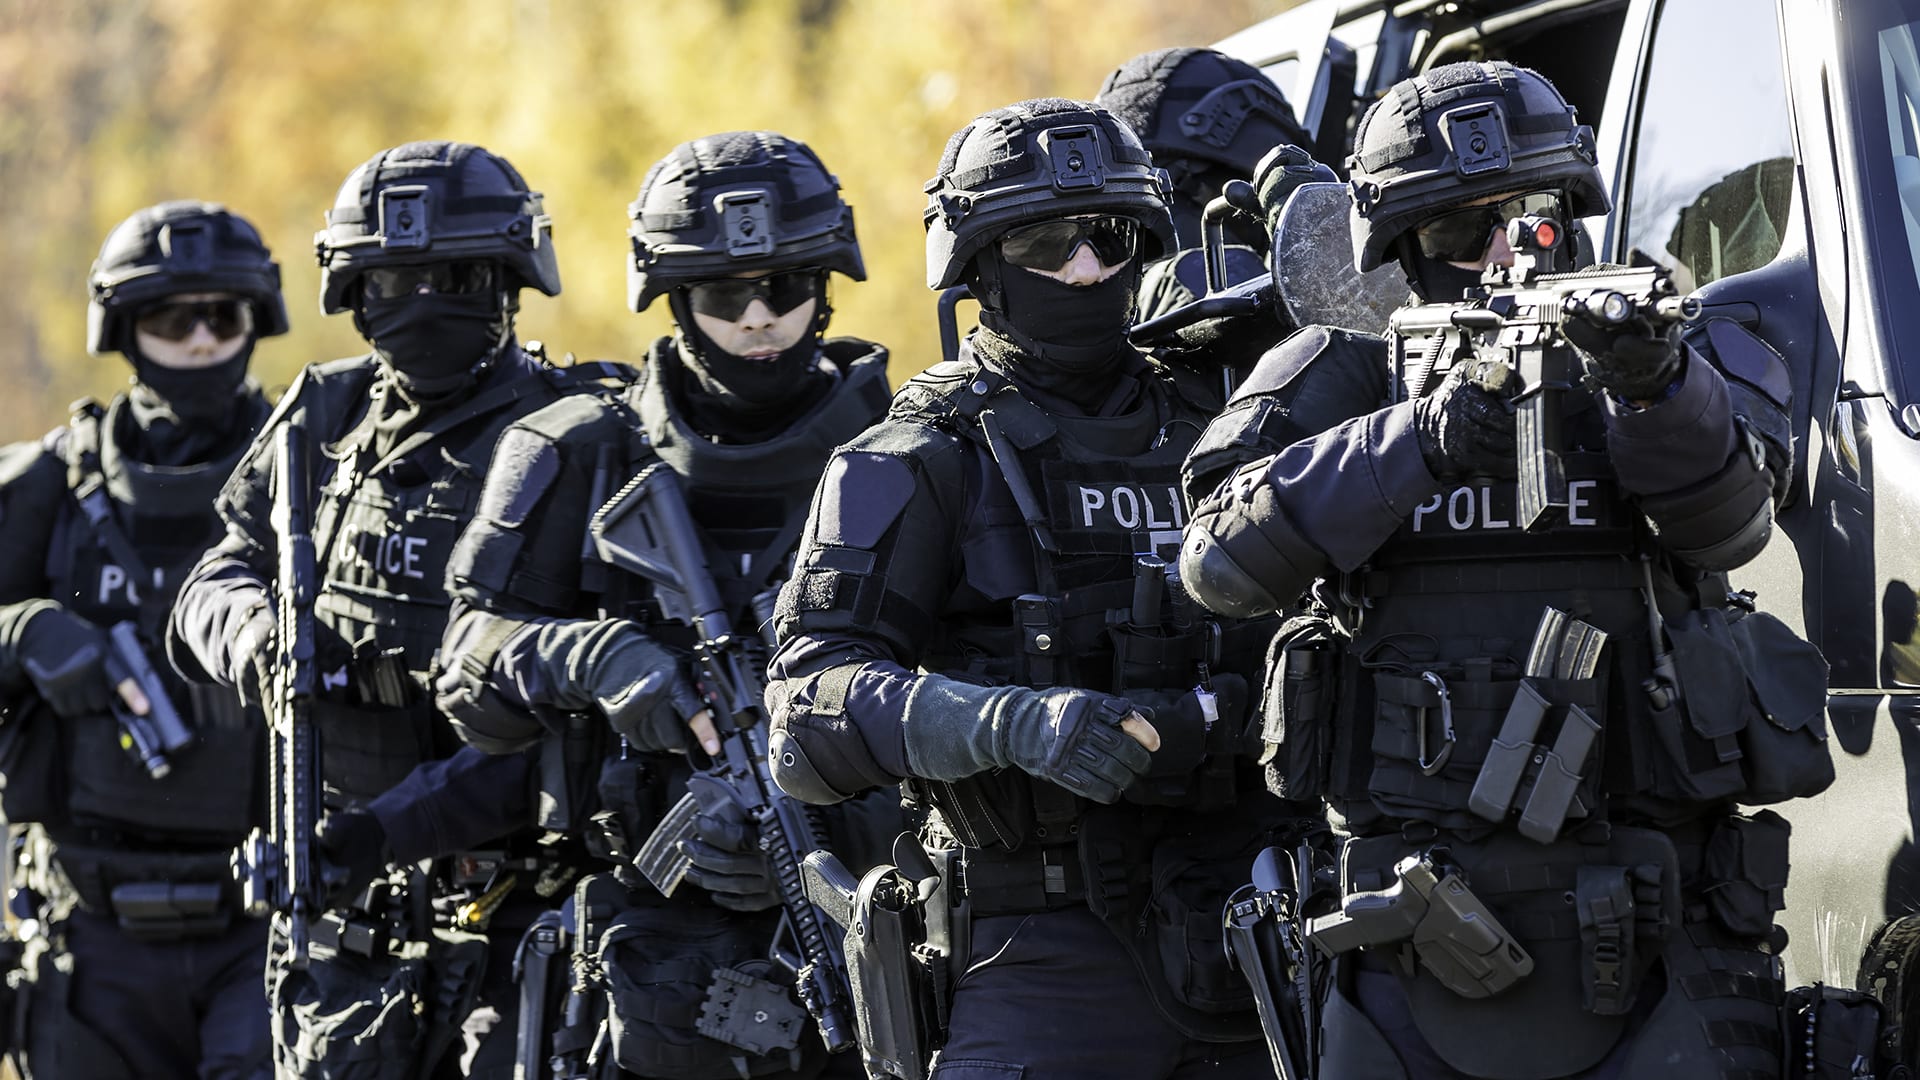 Policejní jednotka vybavená neprůstřelnou vestou